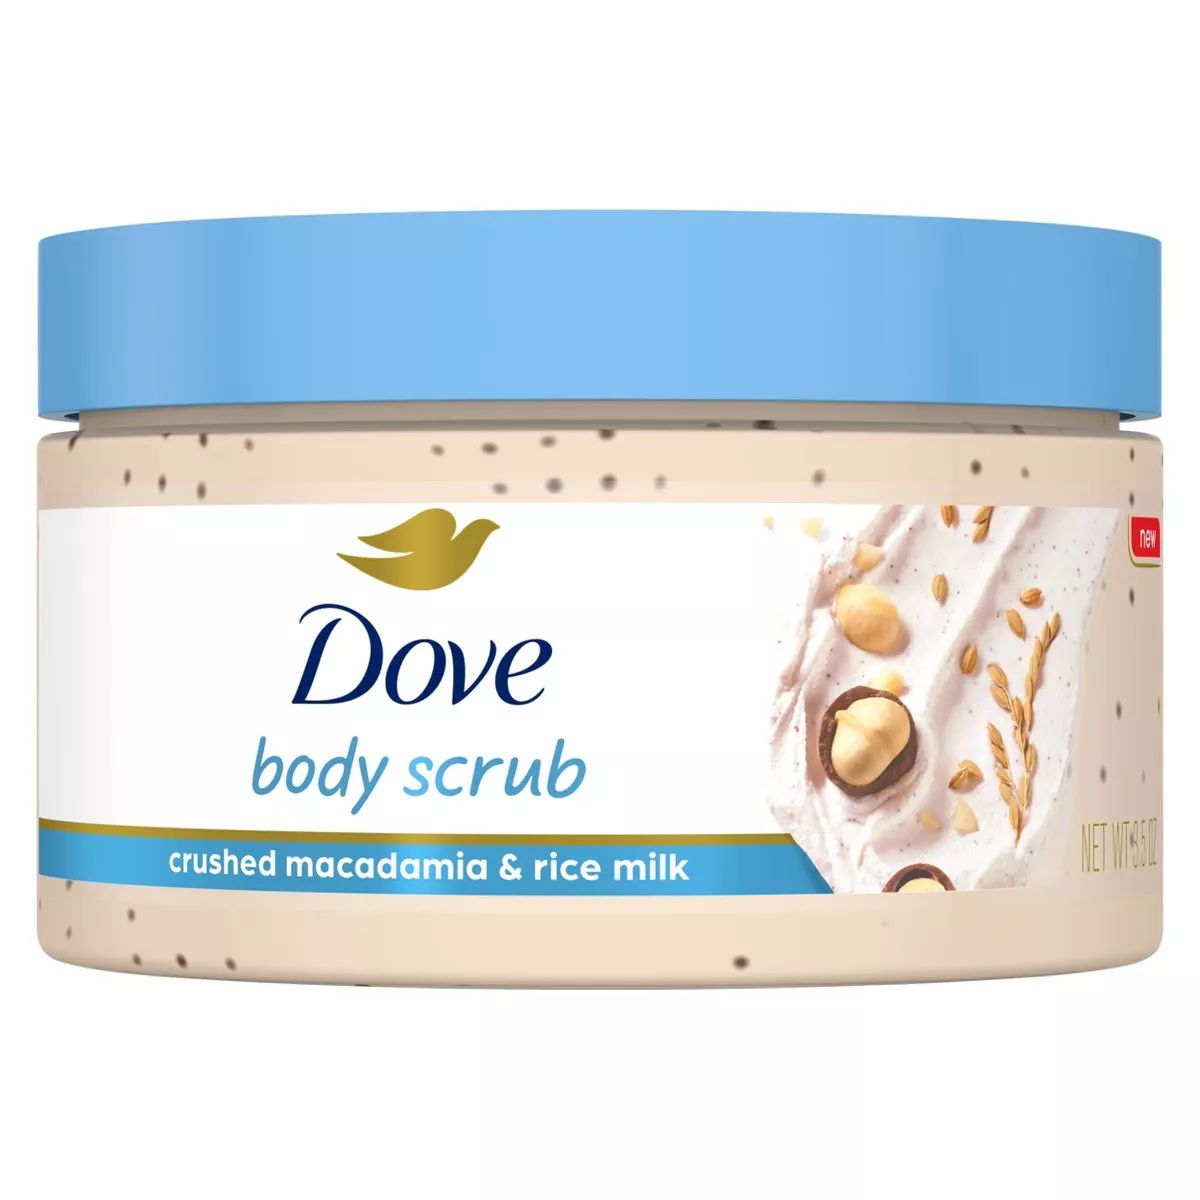 Dove Beauty Crushed Macadamia & Rice Milk Mini Body Scrub - Trial Size - 3.2oz | Target